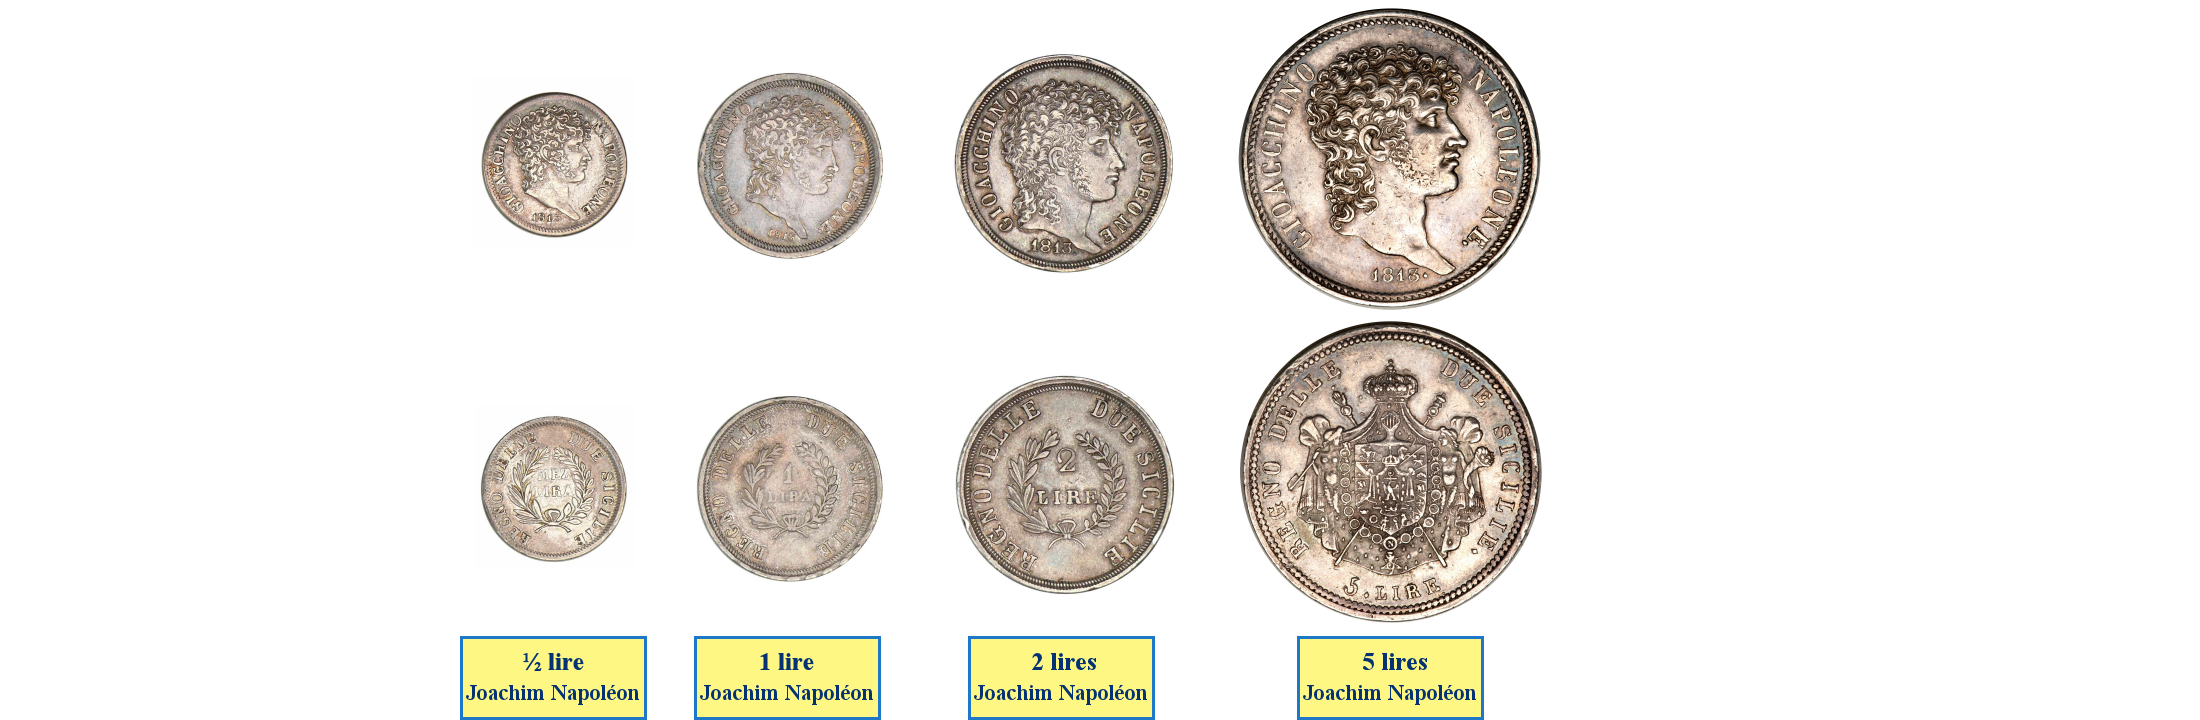 Photos de pièces de monnaies du Royaume de Naples (Joachim Murat)